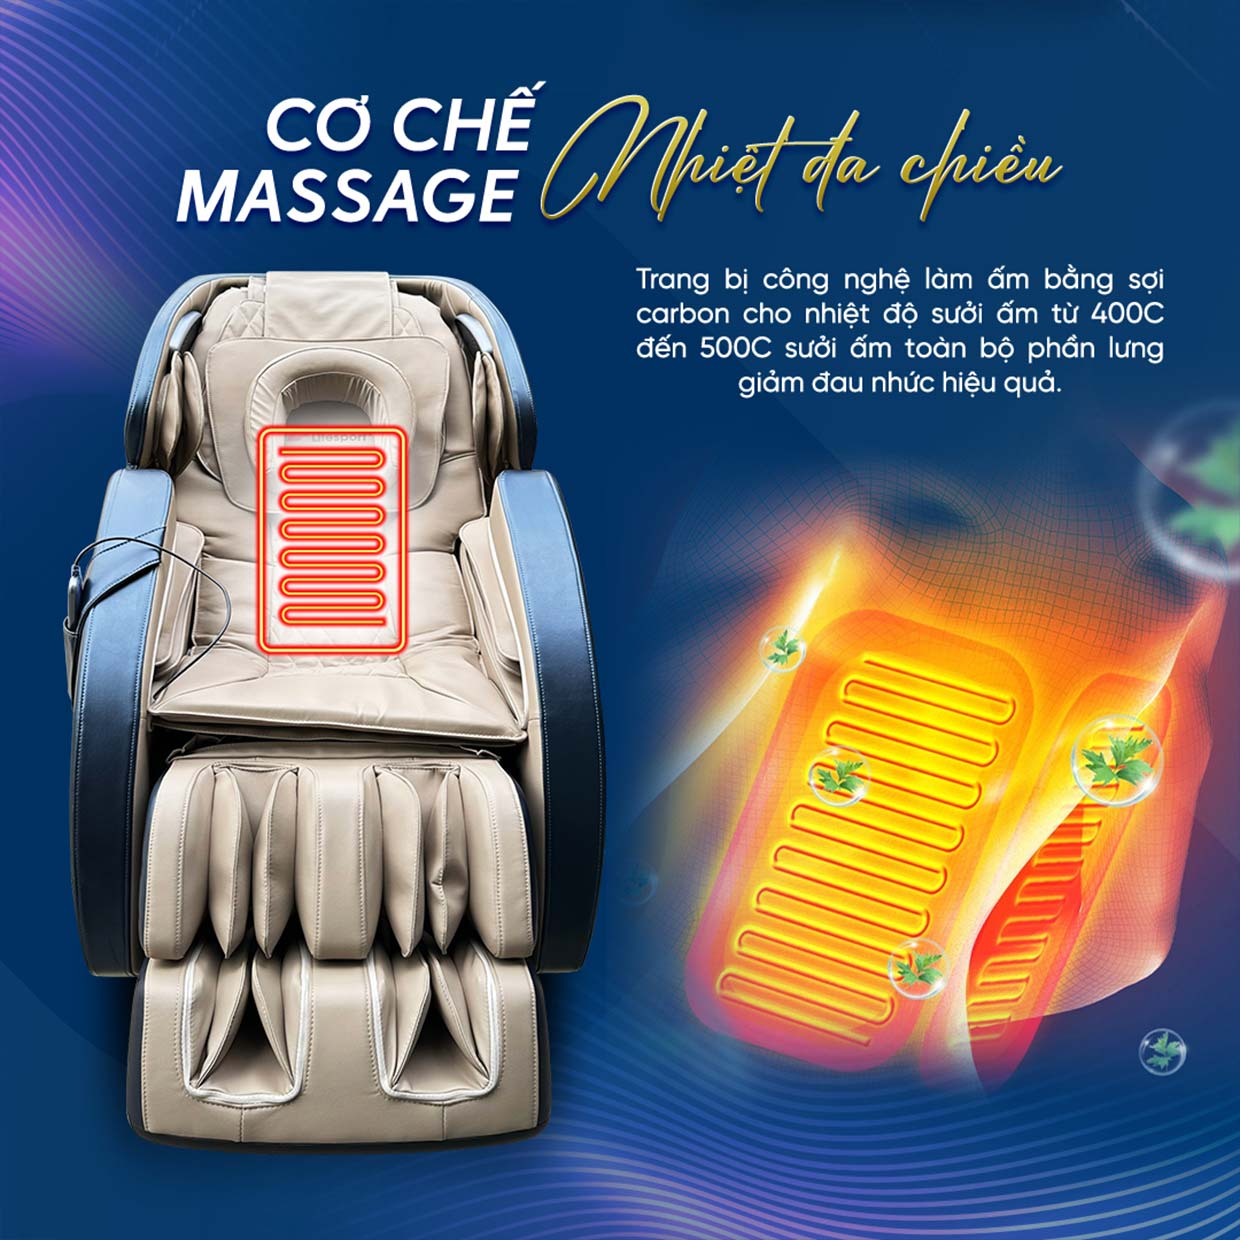 Ghế massage Lifesport LS-2200 có cơ chế massage nhiệt đa chiều